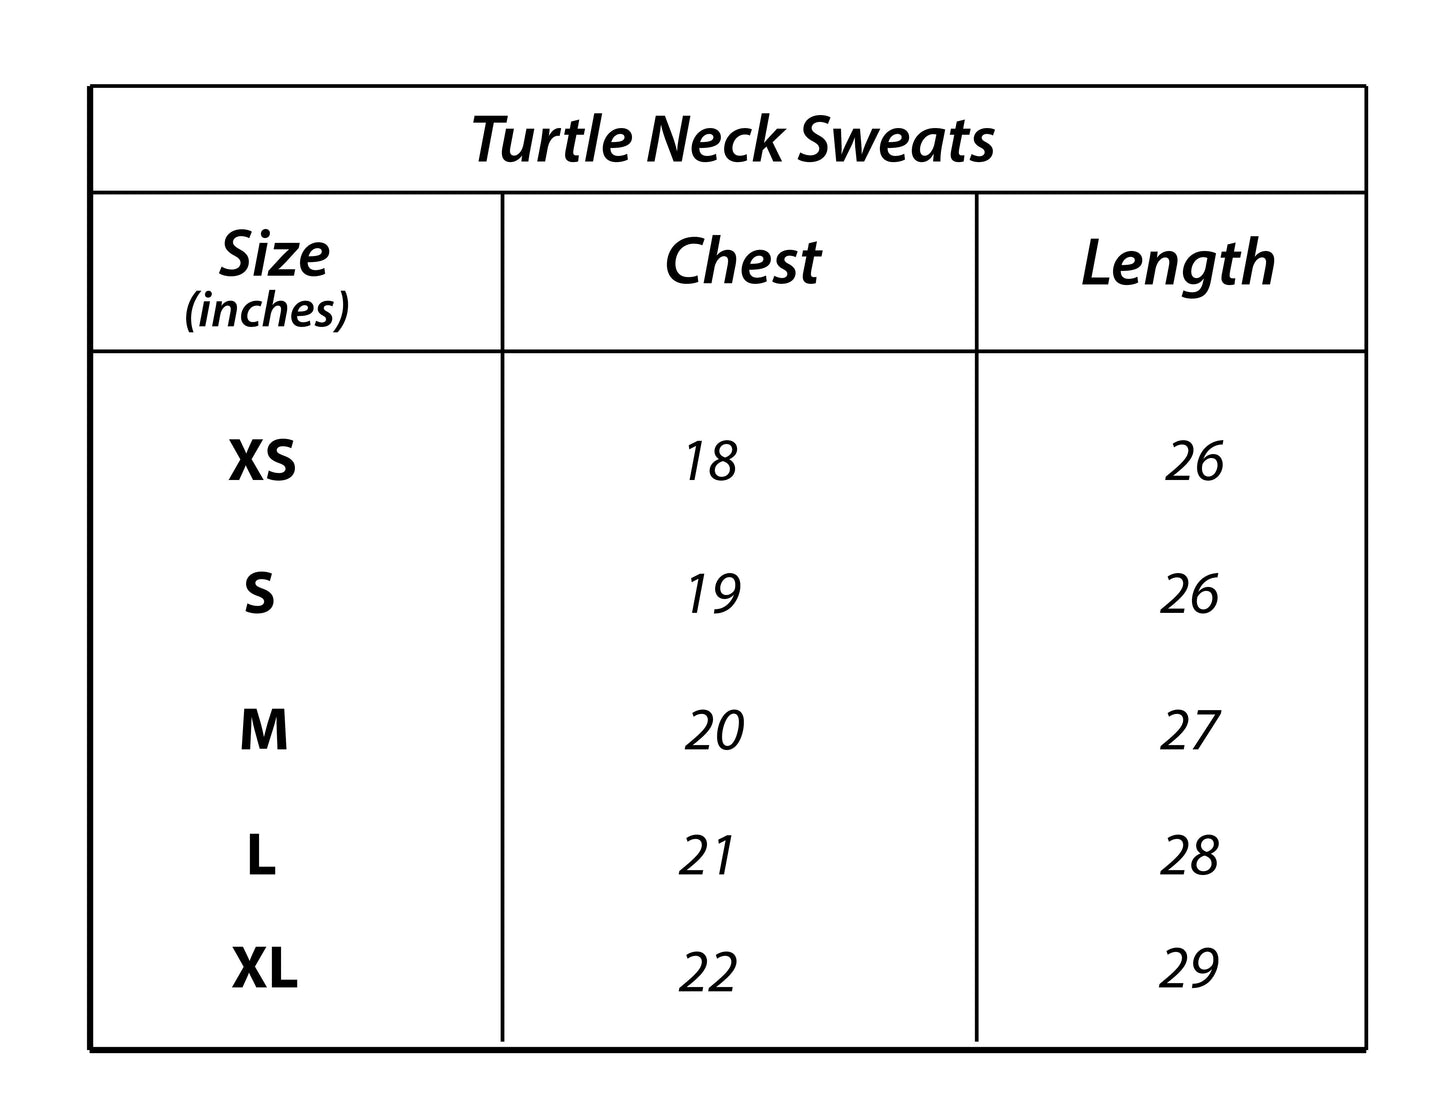 Z.A.R.A Premium Turtle Neck Sweats (Black)